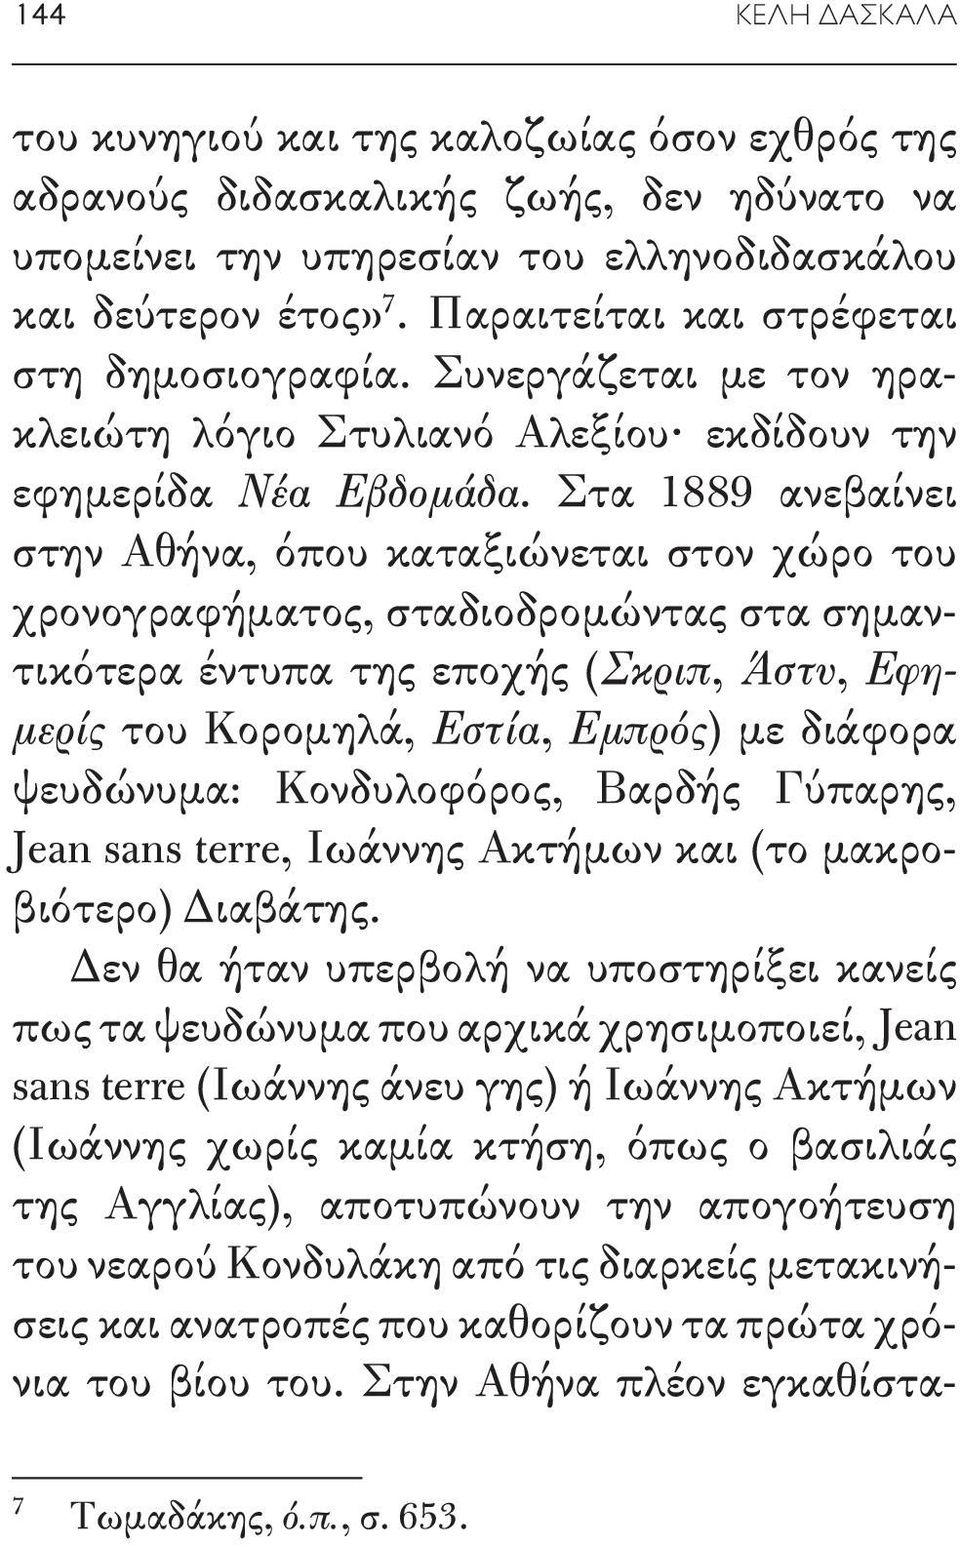 Στα 1889 ανεβαίνει στην Αθήνα, όπου καταξιώνεται στον χώρο του χρονογραφήματος, σταδιοδρομώντας στα σημαντικότερα έντυπα της εποχής (Σκριπ, Άστυ, Εφημερίς του Κορομηλά, Εστία, Εμπρός) με διάφορα